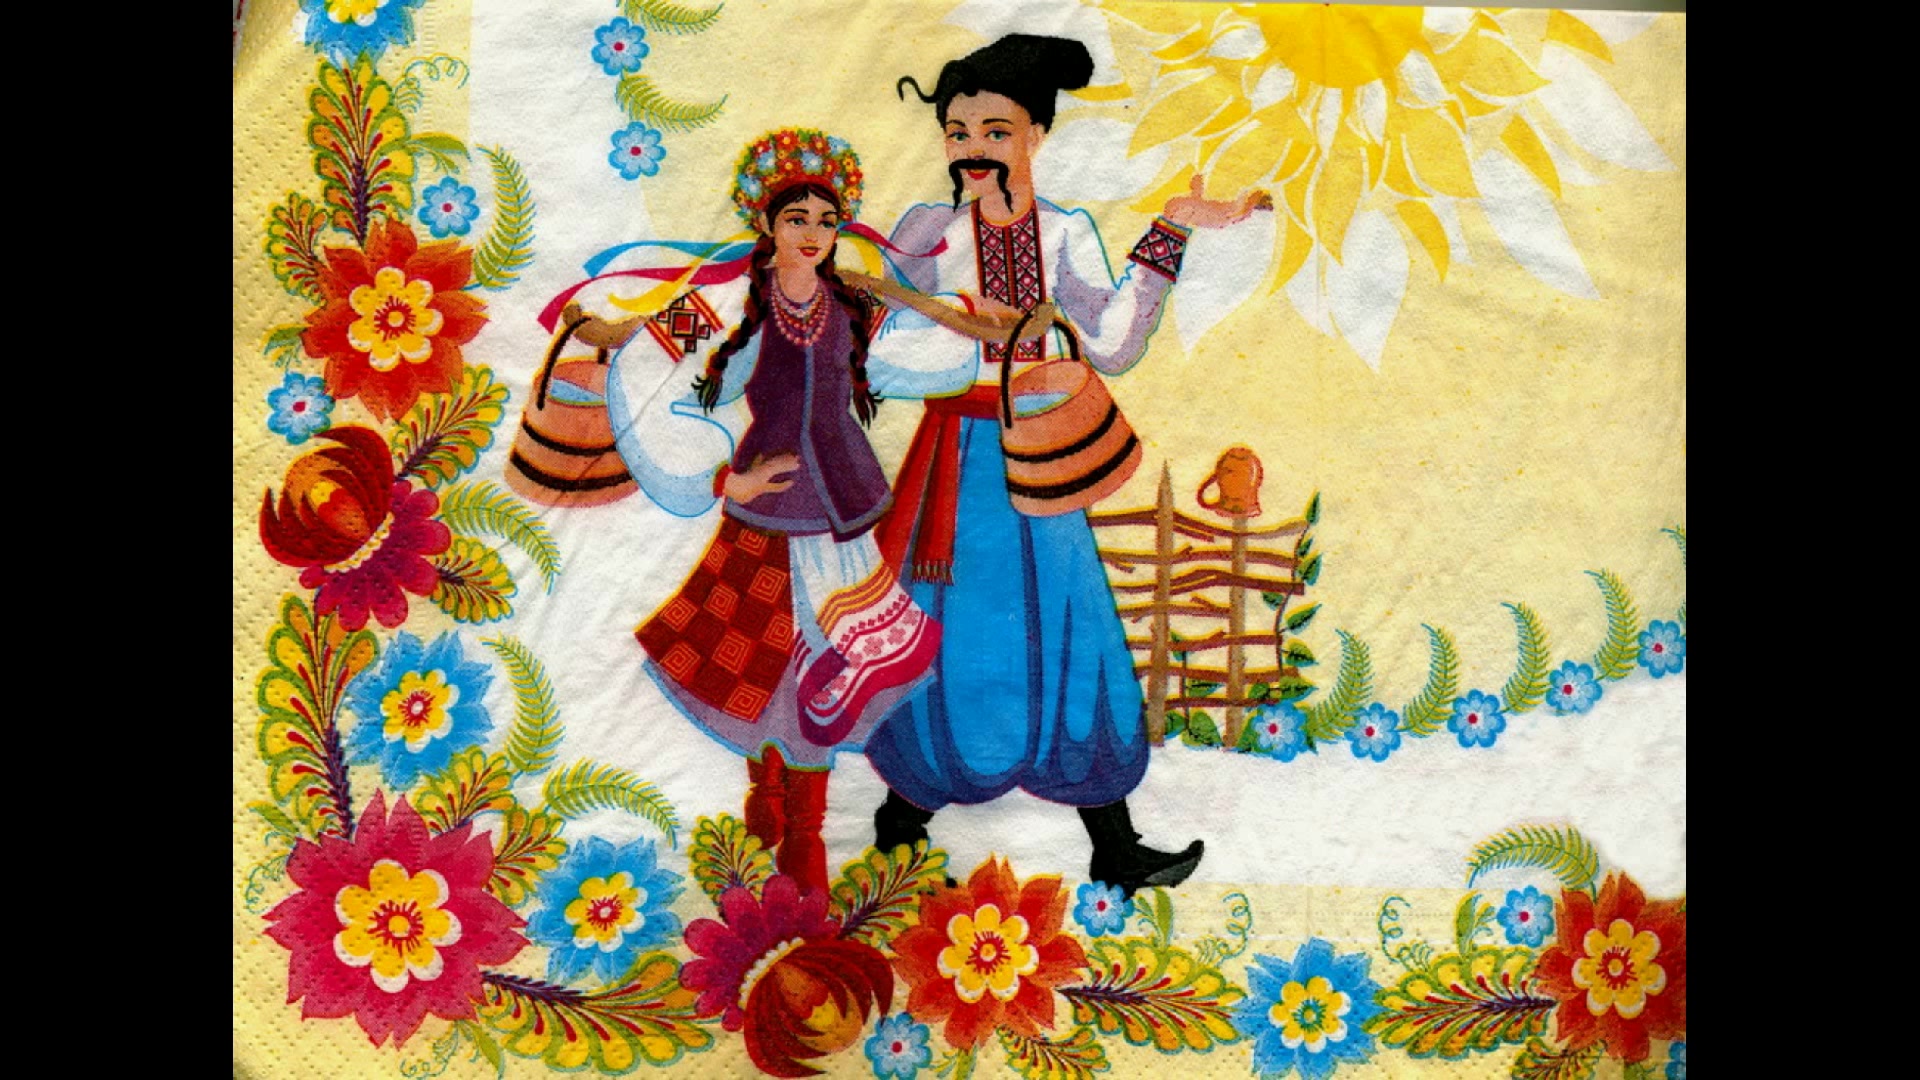 Украинская песня галя воду. Украинский фольклор. Украинский фольклор иллюстрации. Рисунки с украинской тематикой. Картинки на украинскую тематику.